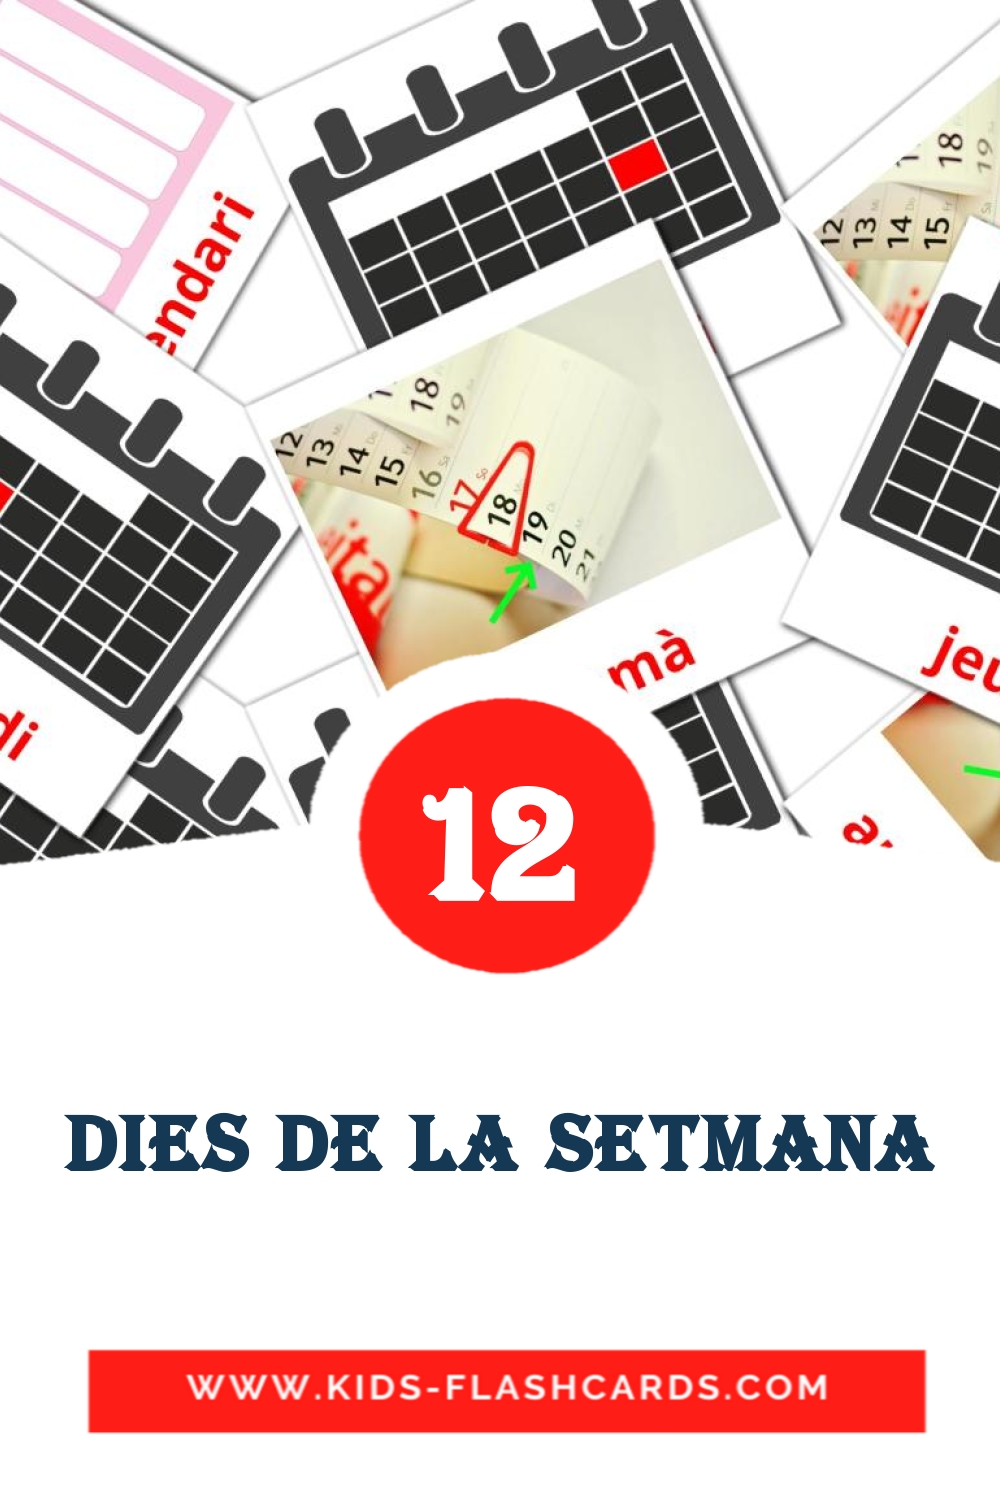 Dies de la setmana на каталонском для Детского Сада (12 карточек)